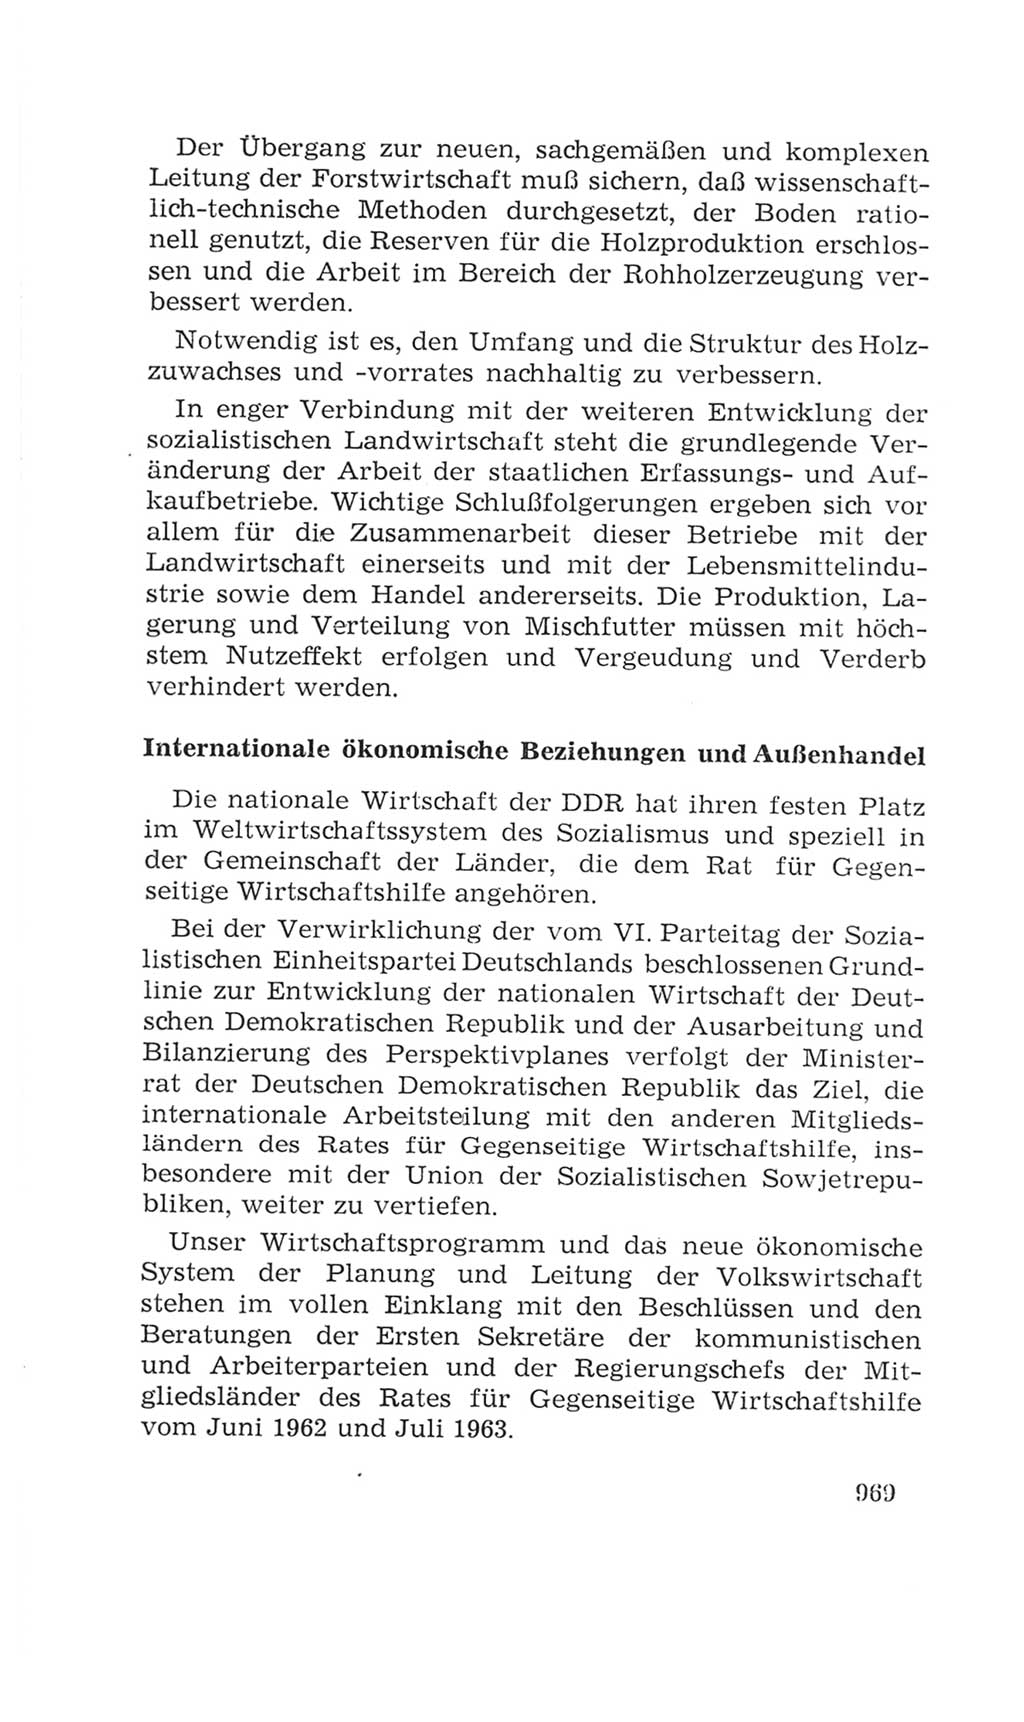 Volkskammer (VK) der Deutschen Demokratischen Republik (DDR), 4. Wahlperiode 1963-1967, Seite 969 (VK. DDR 4. WP. 1963-1967, S. 969)